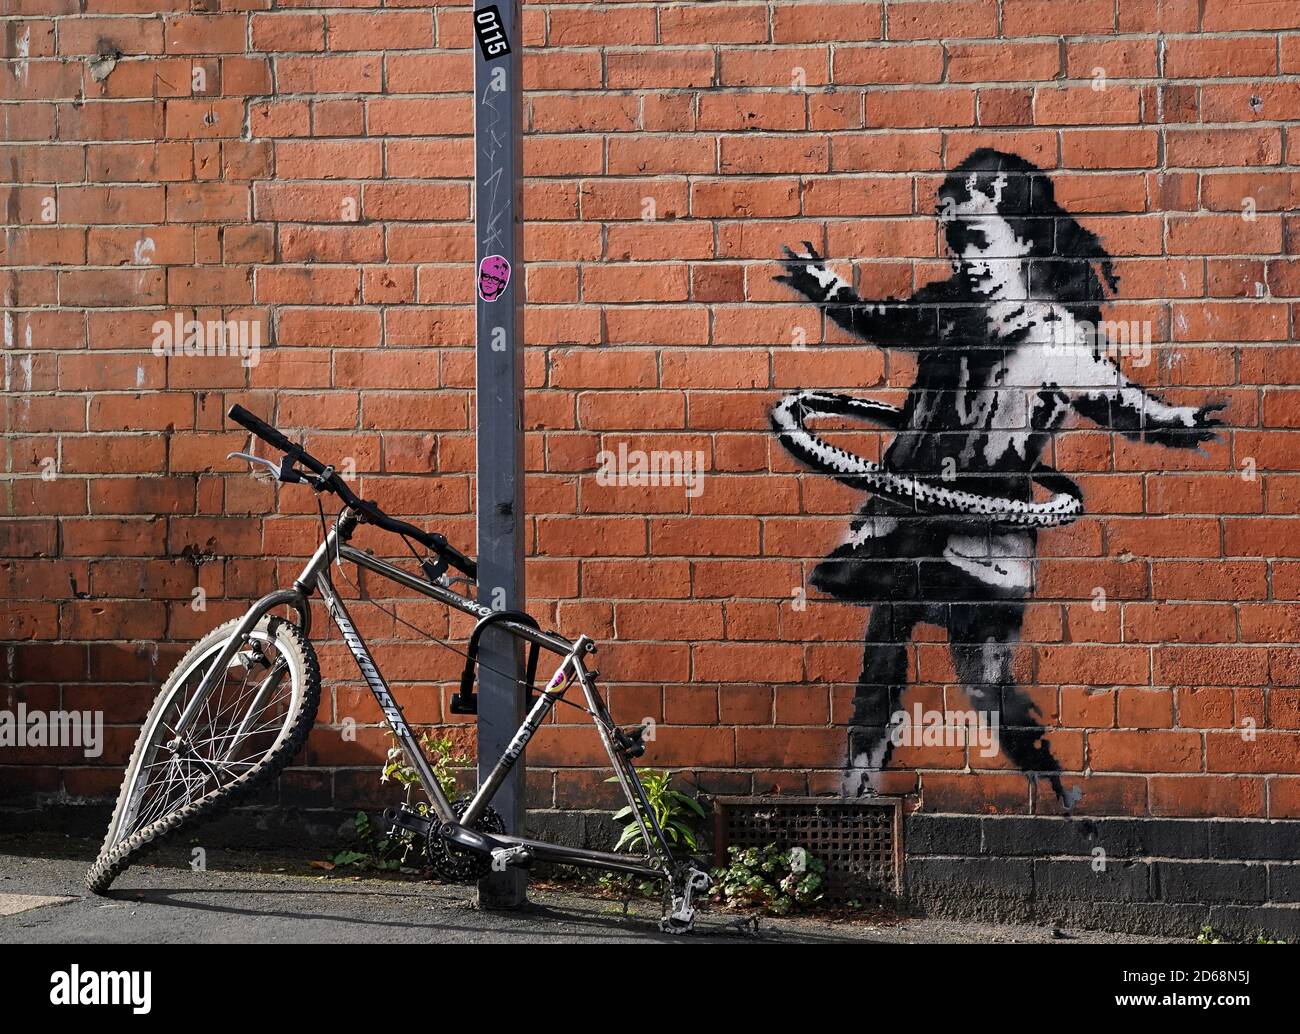 Graffiti-Kunstwerke, die jetzt als das Werk des Straßenkünstlers Banksy bestätigt wurden, befinden sich auf einer Seite eines Grundstücks an der Rothesay Avenue und der Ilkeston Road, Nottingham. Das Kunstwerk zeigt ein junges Mädchen, das mit einem Reifen spielt, und ist auf einer Wand in der Nähe eines verlassenen Fahrrads gemalt, dem ein Rad fehlt. Stockfoto